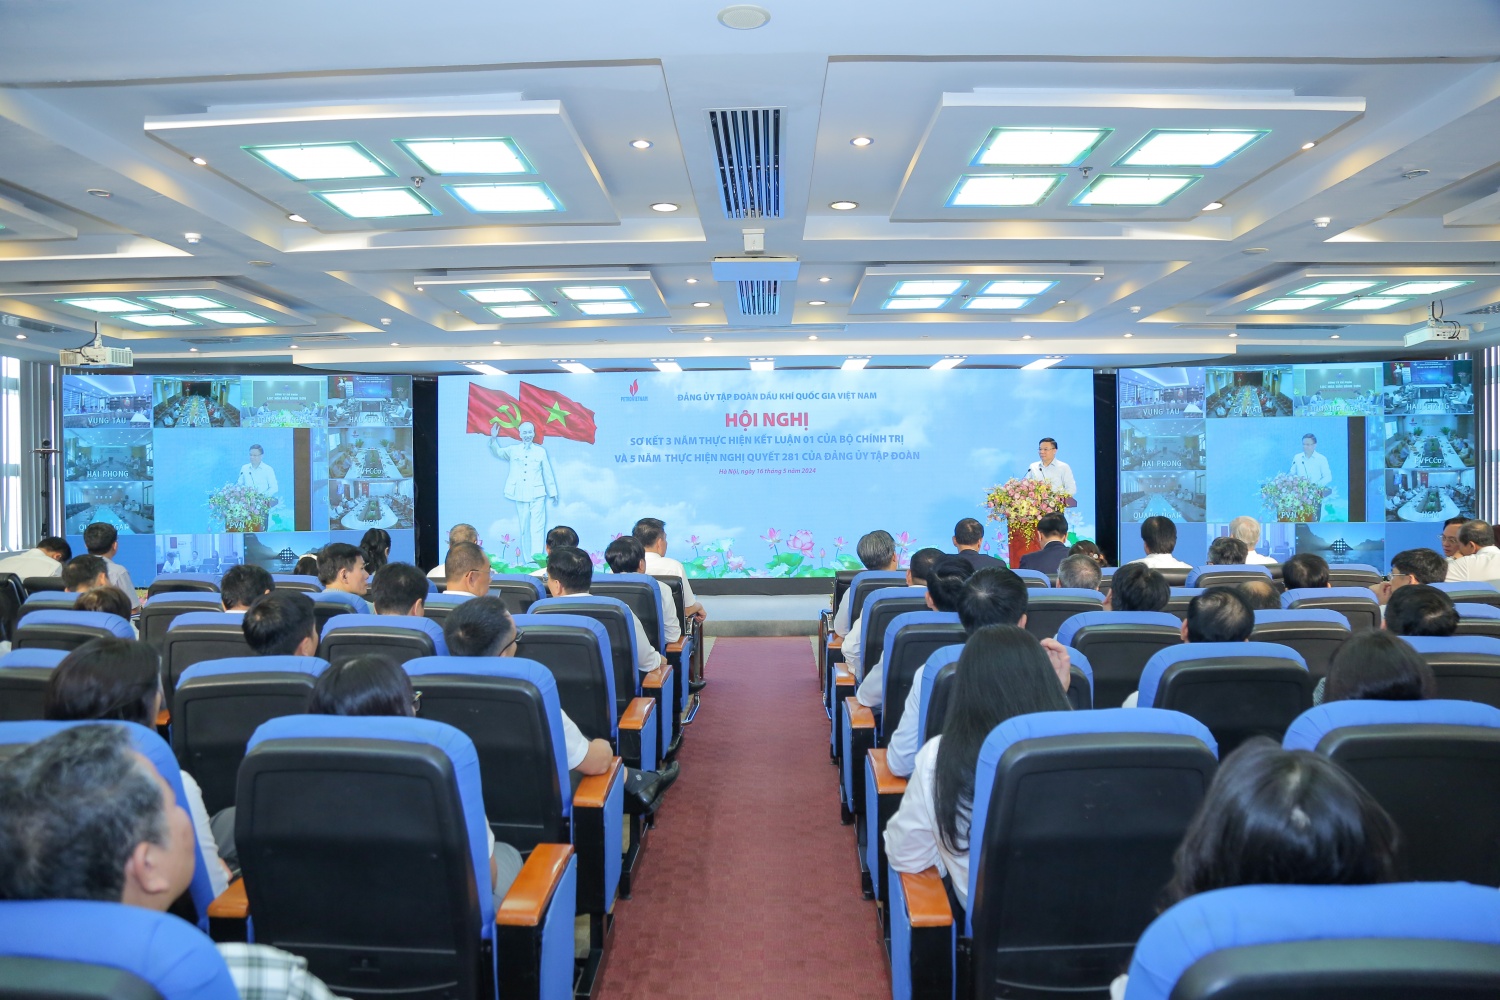 Đảng ủy Tập đoàn Dầu khí Quốc gia Việt Nam sơ kết 3 năm thực hiện Kết luận 01 của Bộ Chính trị”